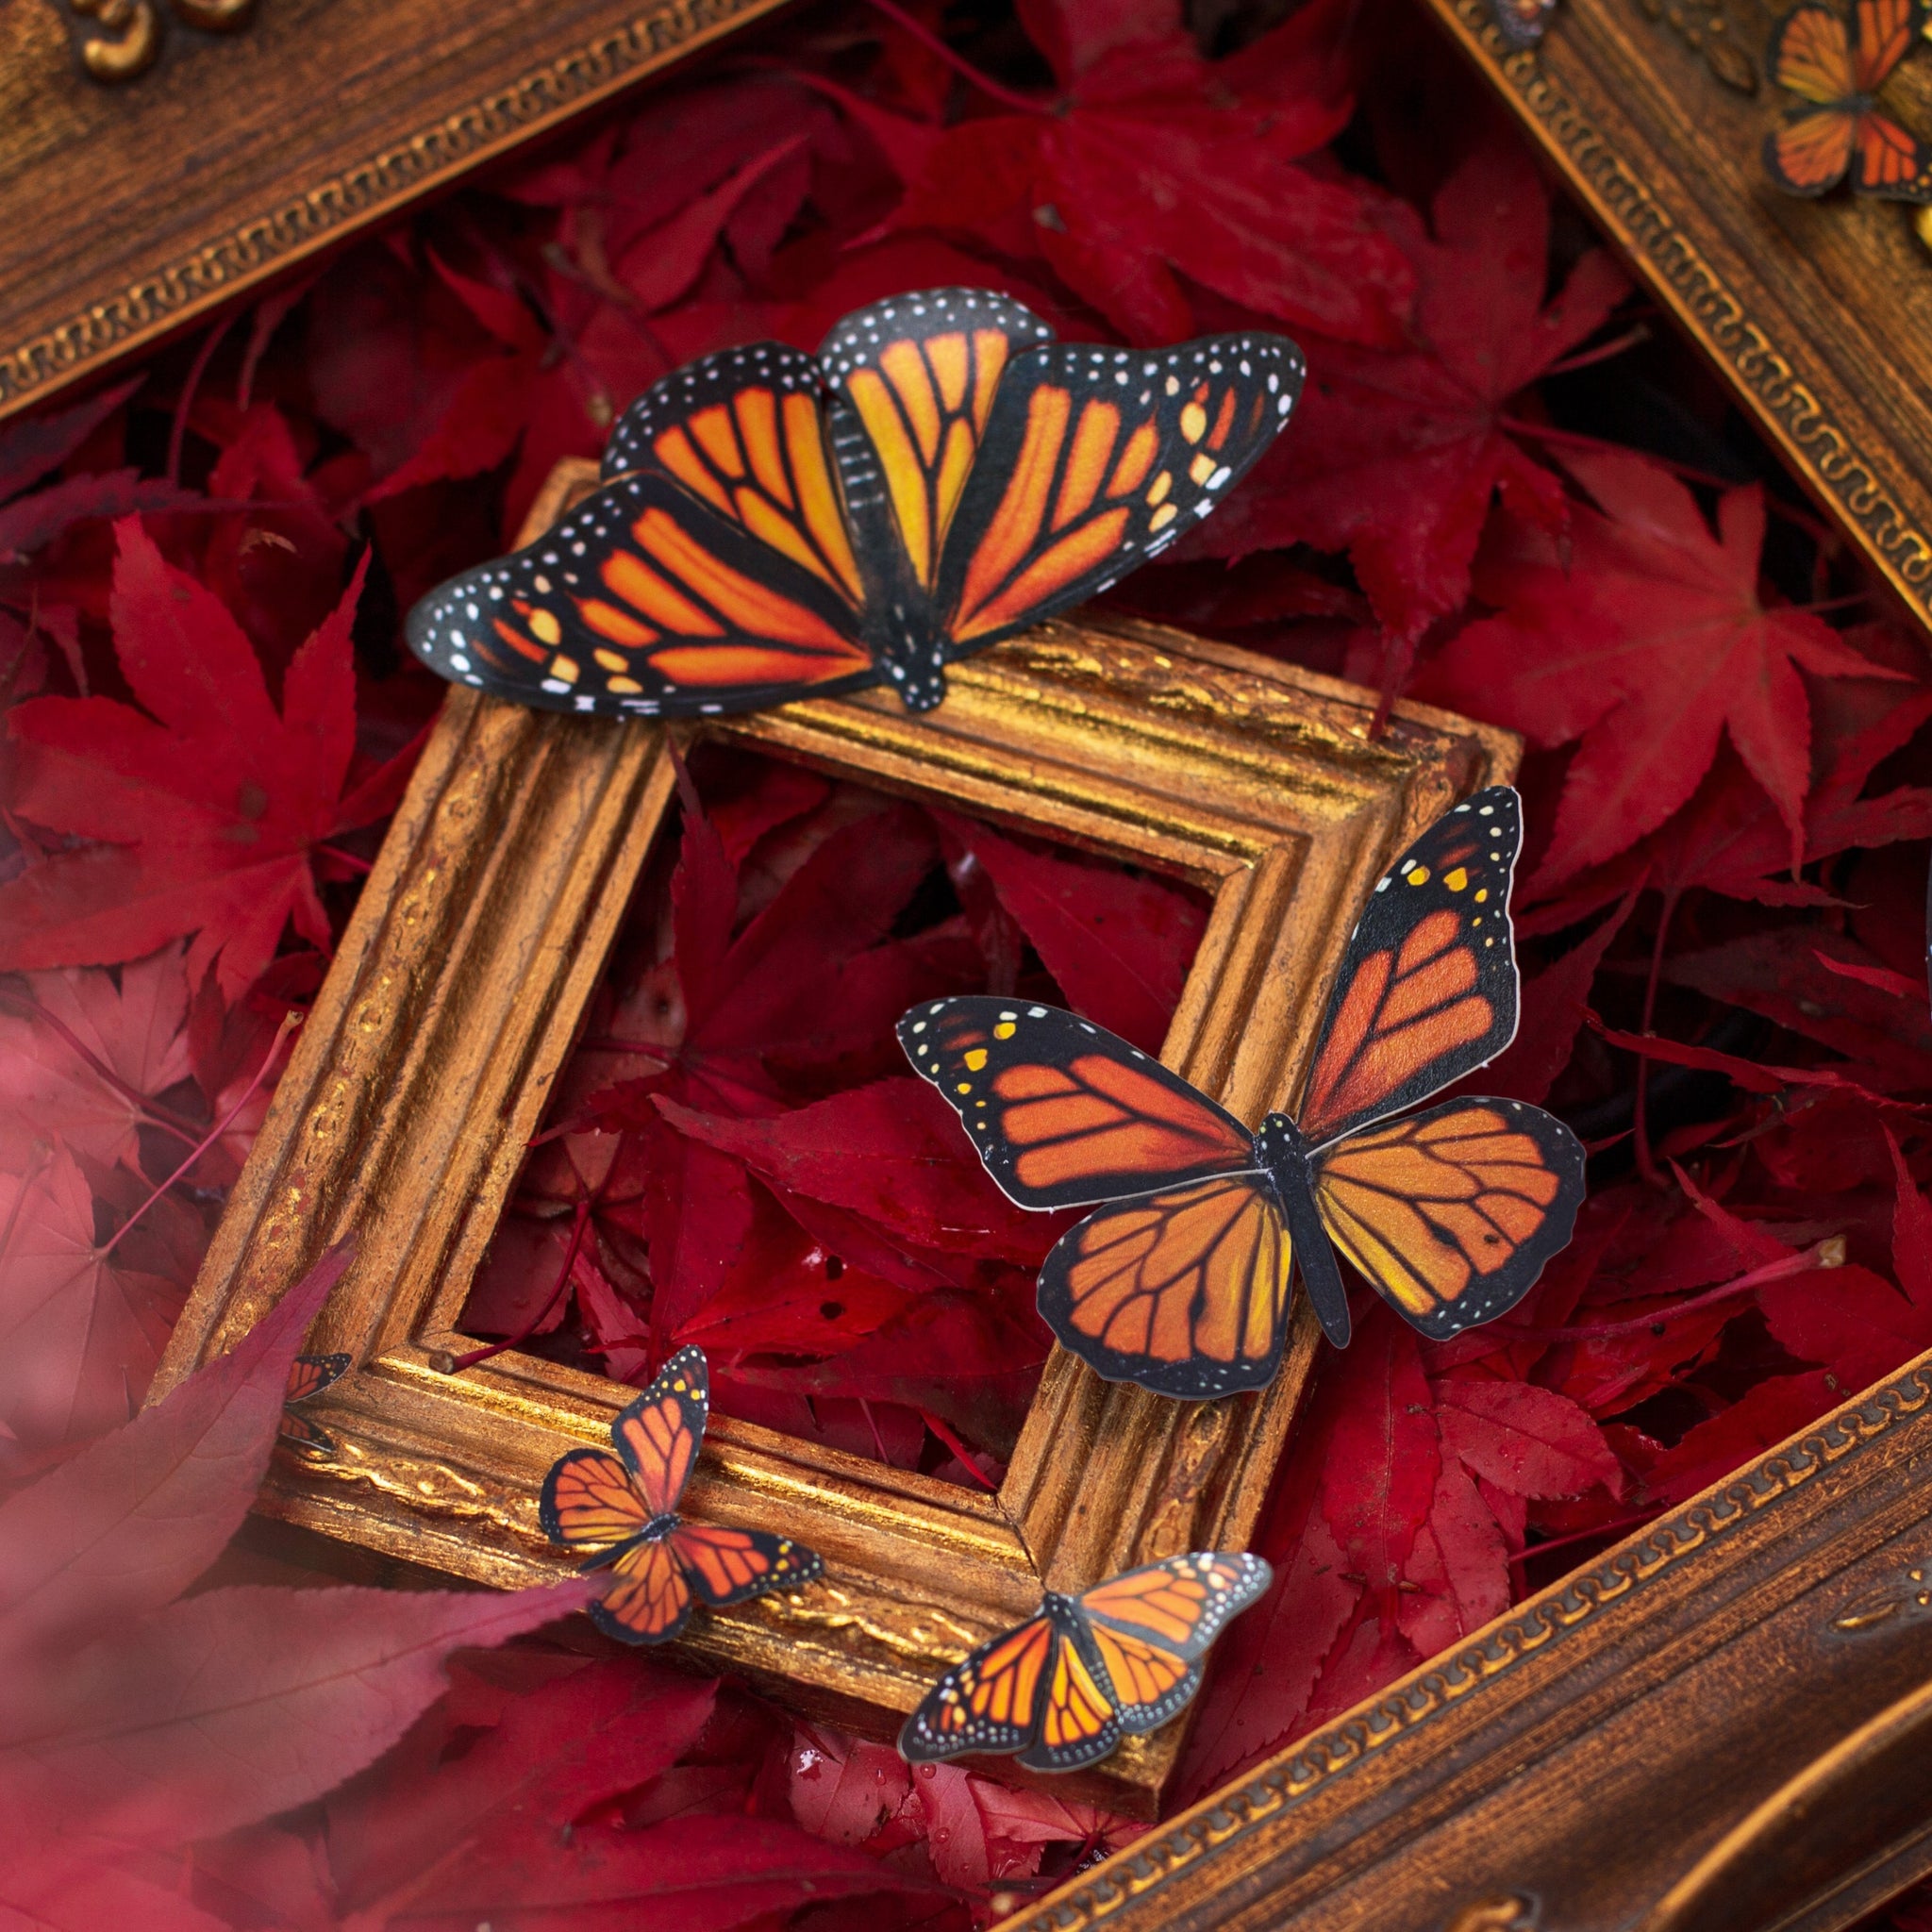 DIY Art Kit: Monarch Butterfly